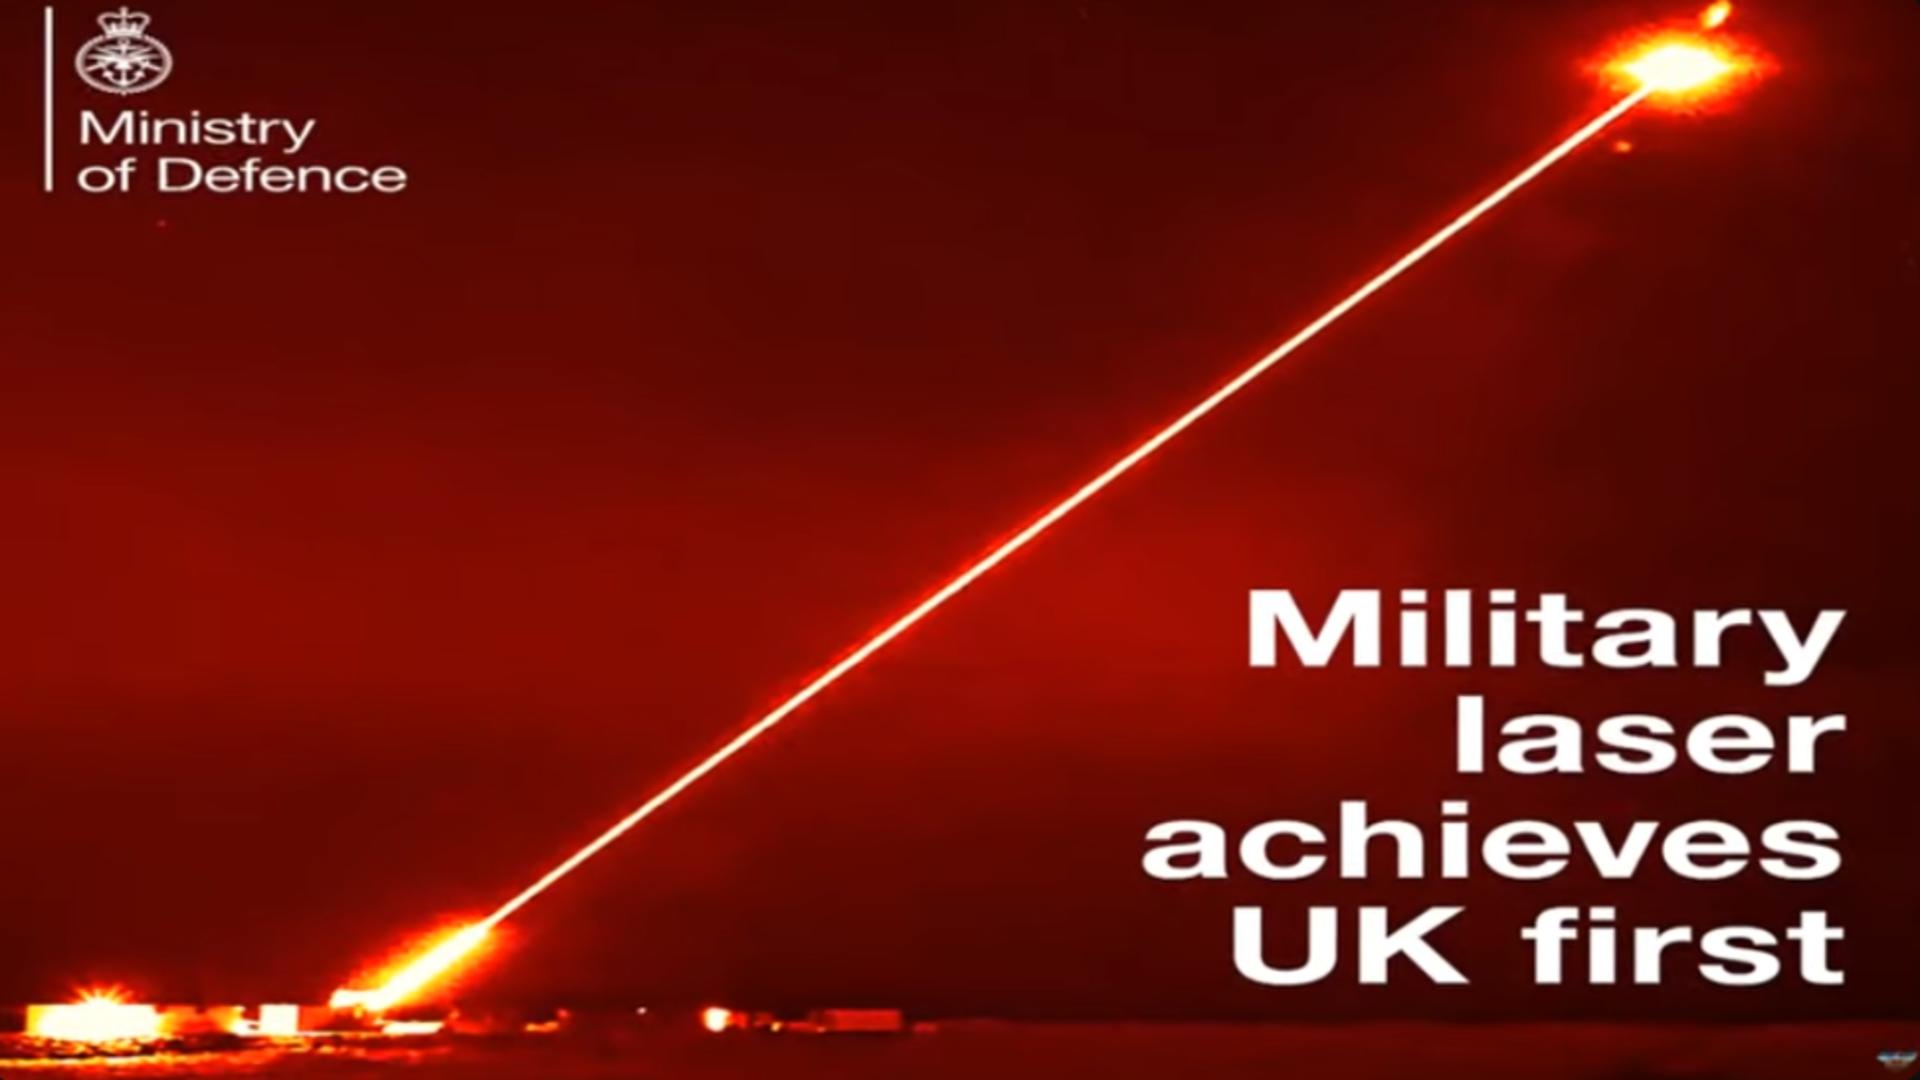 Marea Britanie a dezvăluit mega-laserul futurist care poate distruge o monedă de la o distanță de peste un kilometru